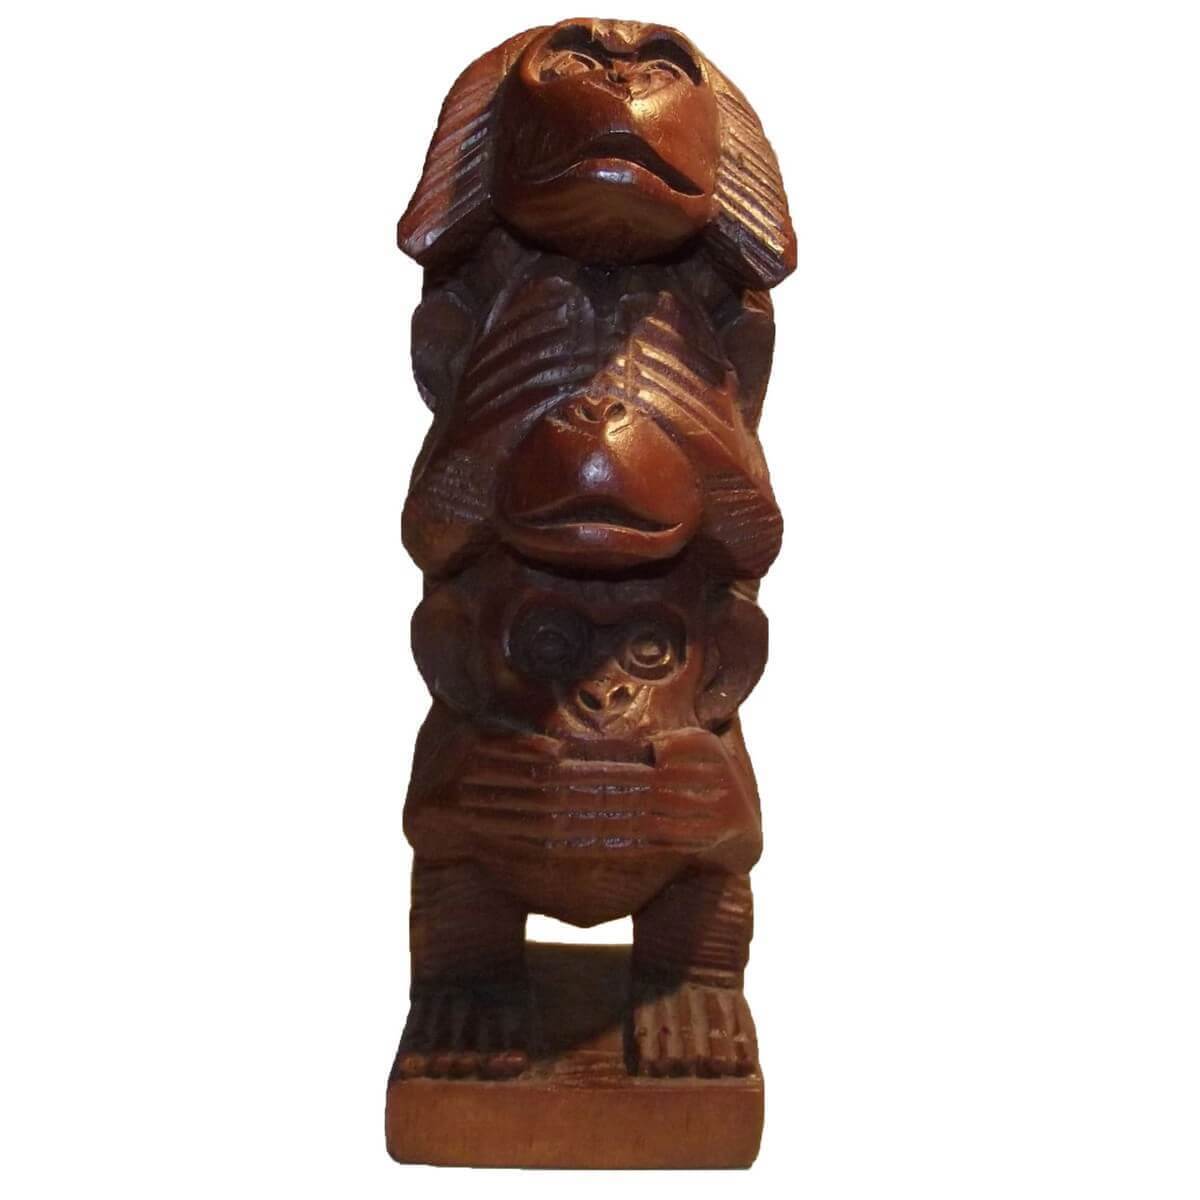 Die 3 Affen Holz Holzfigur Holzskulptur Handgeschnitzt Dekoration ca.12cm